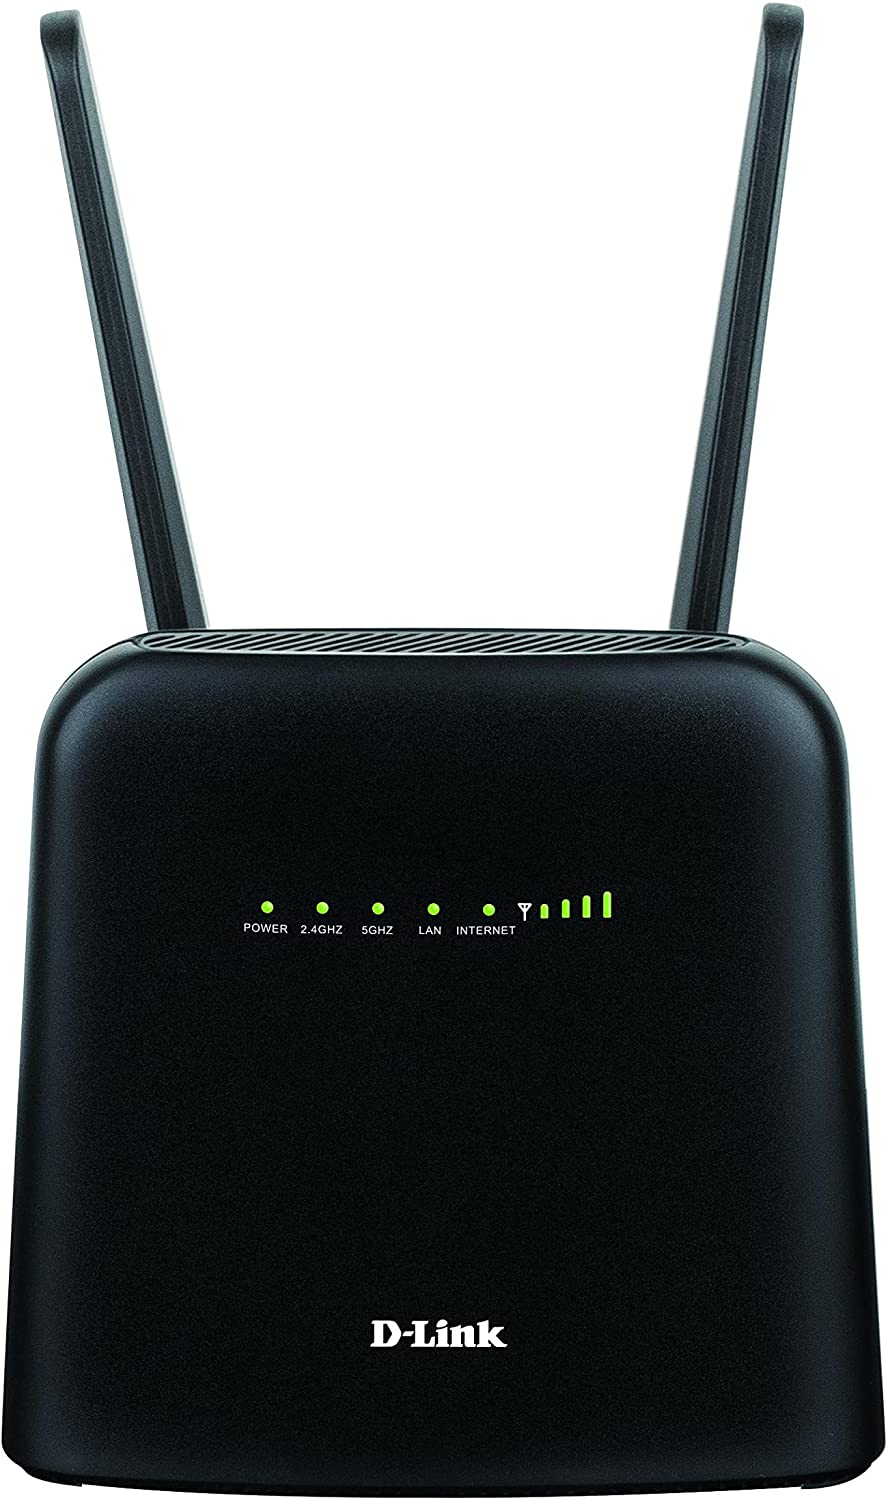 Migliori router e modem 4G/LTE per sfruttare al massimo la SIM dati